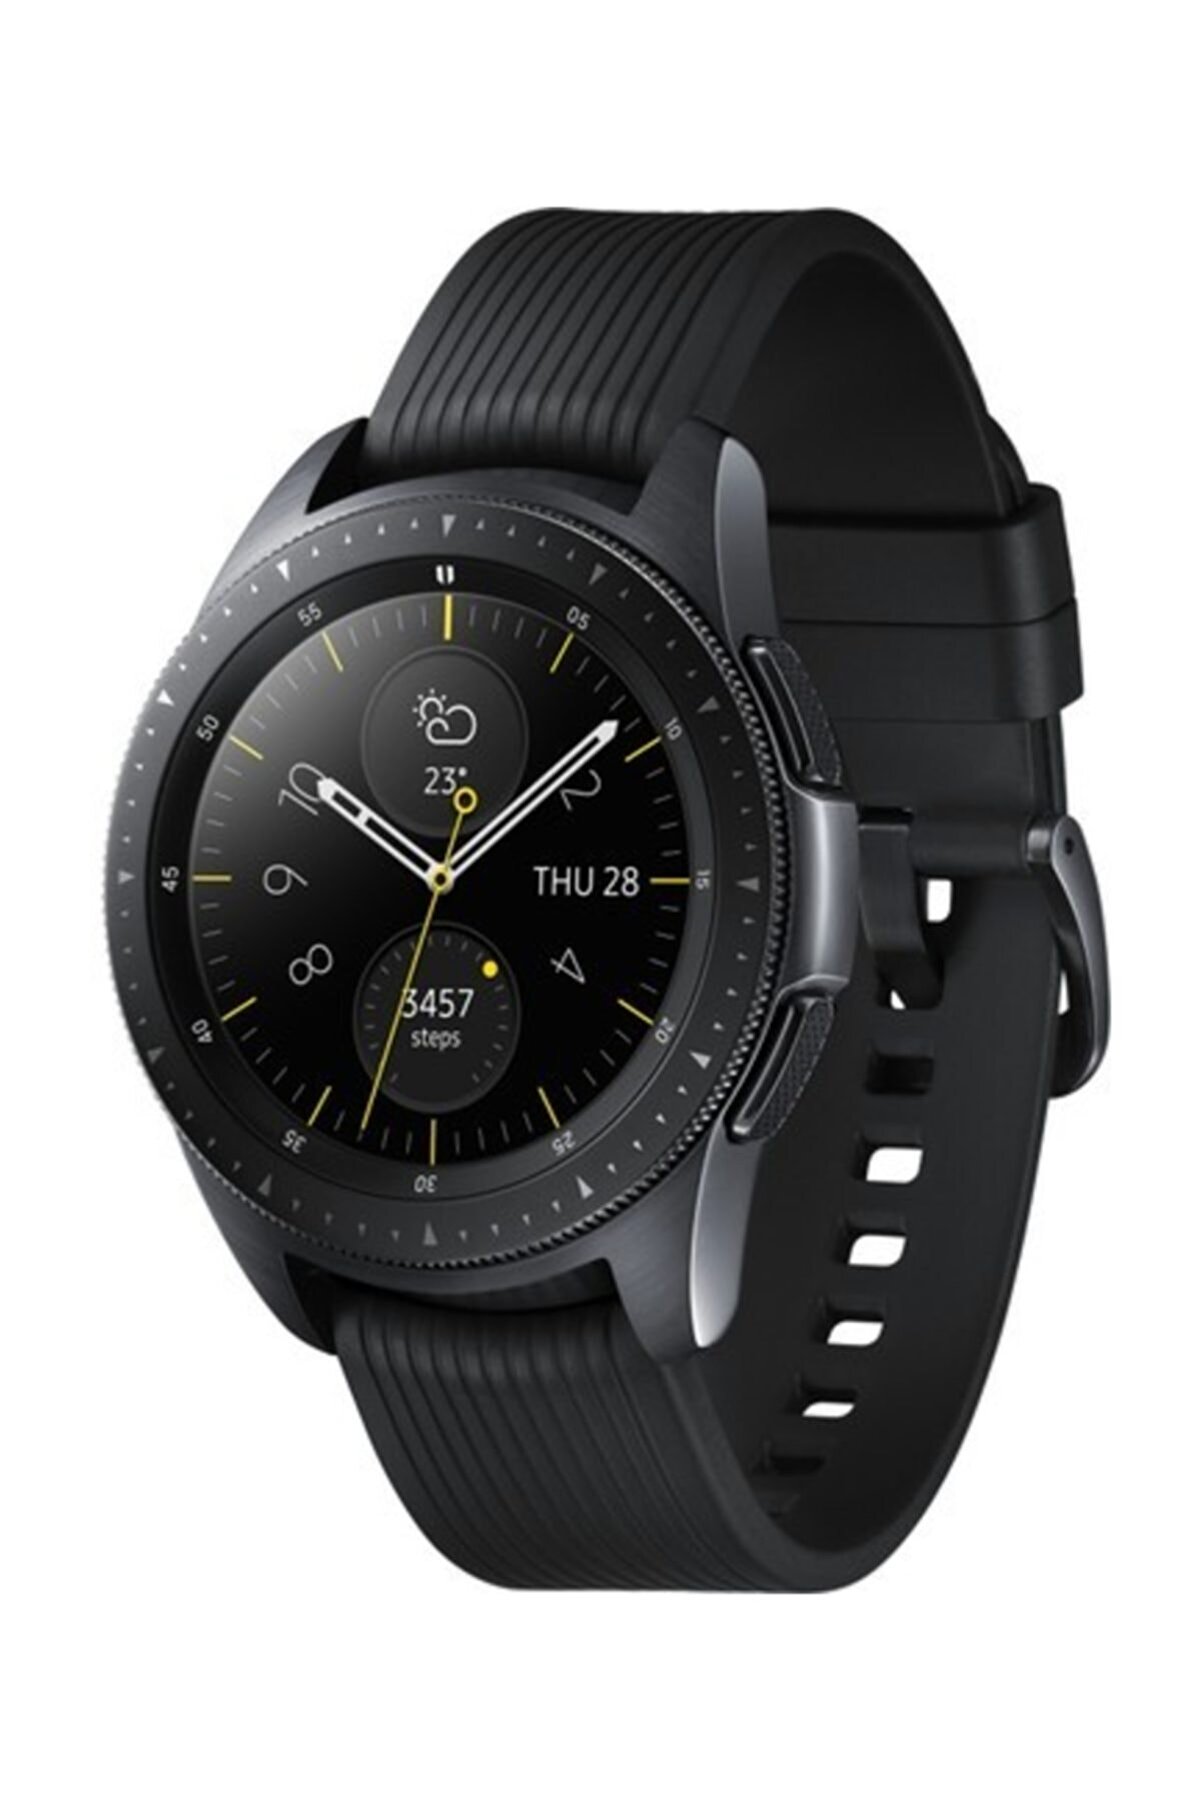 Samsung Galaxy Watch Siyah (42mm) (android Ve Iphone Uyumlu) Siyah - Sm-r810nzkatur ( Tr Garantili)